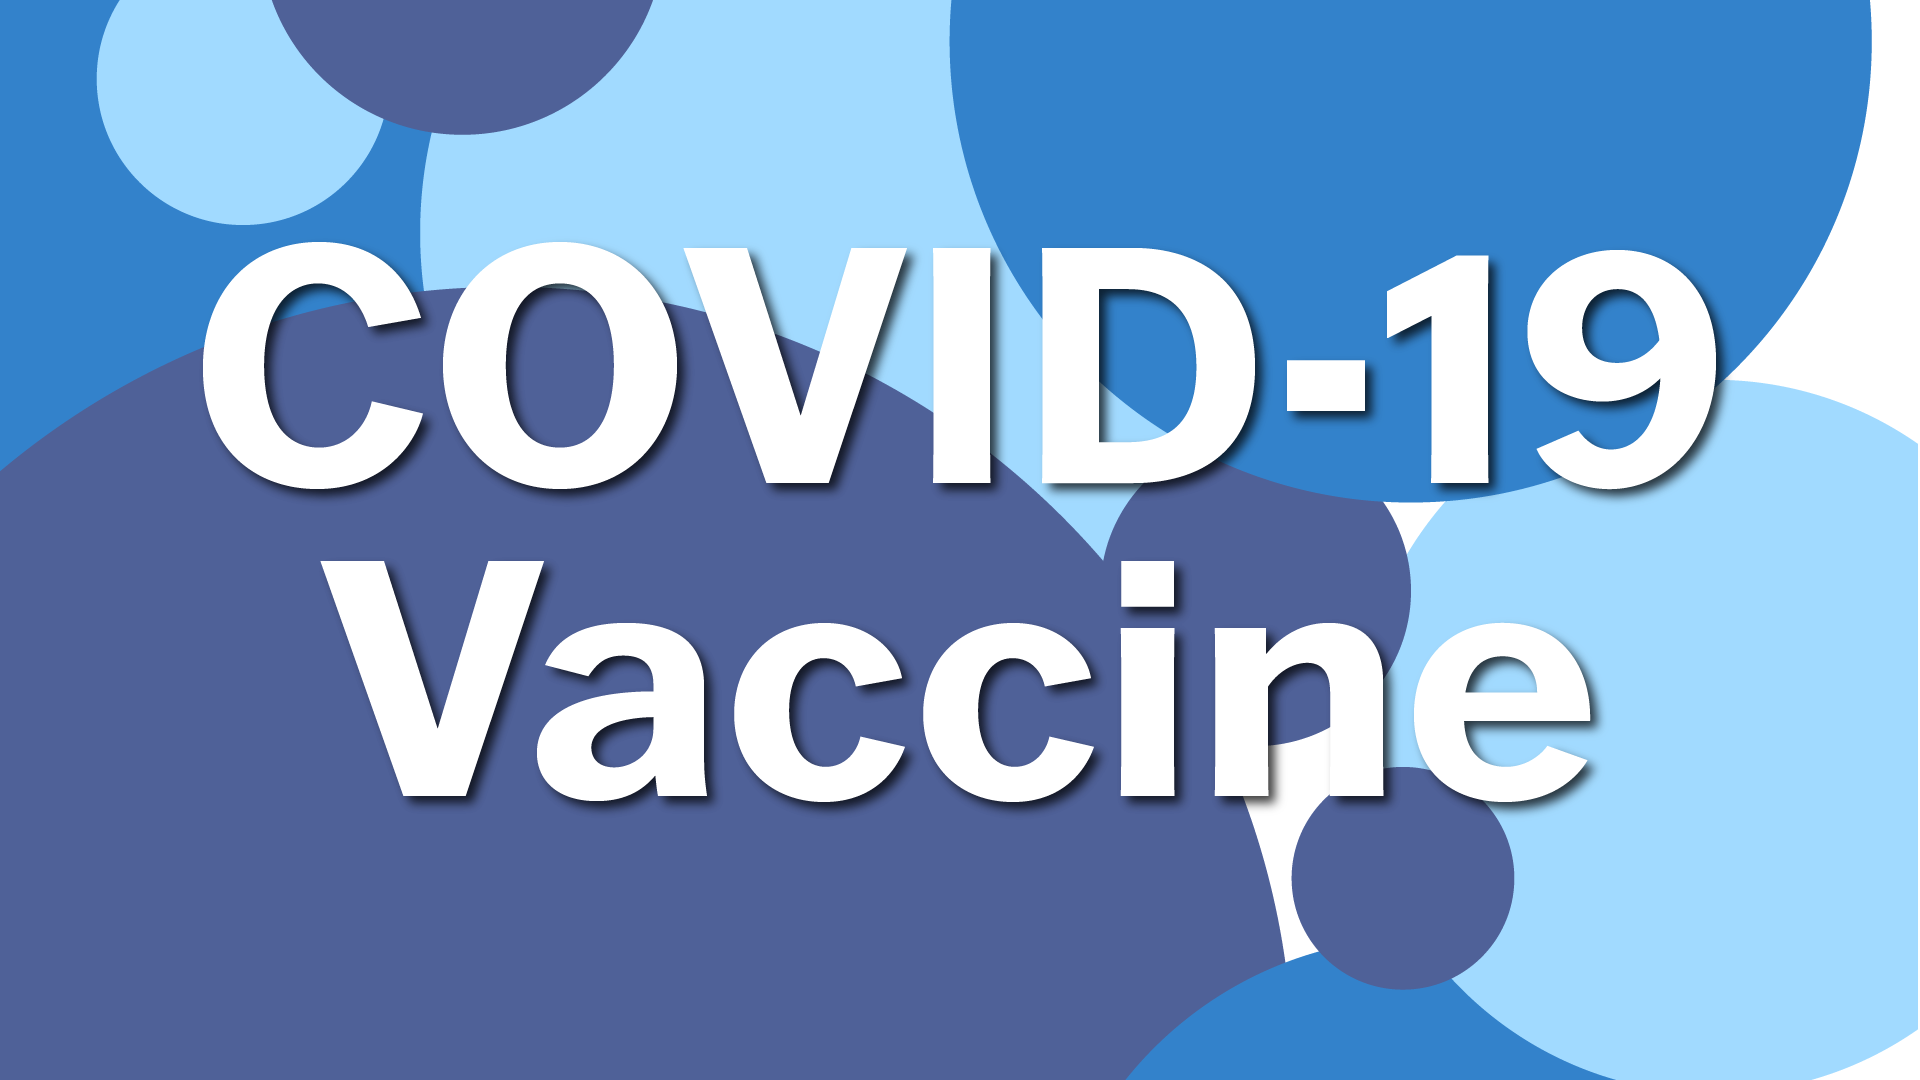 "COVID-19 Vaccine"